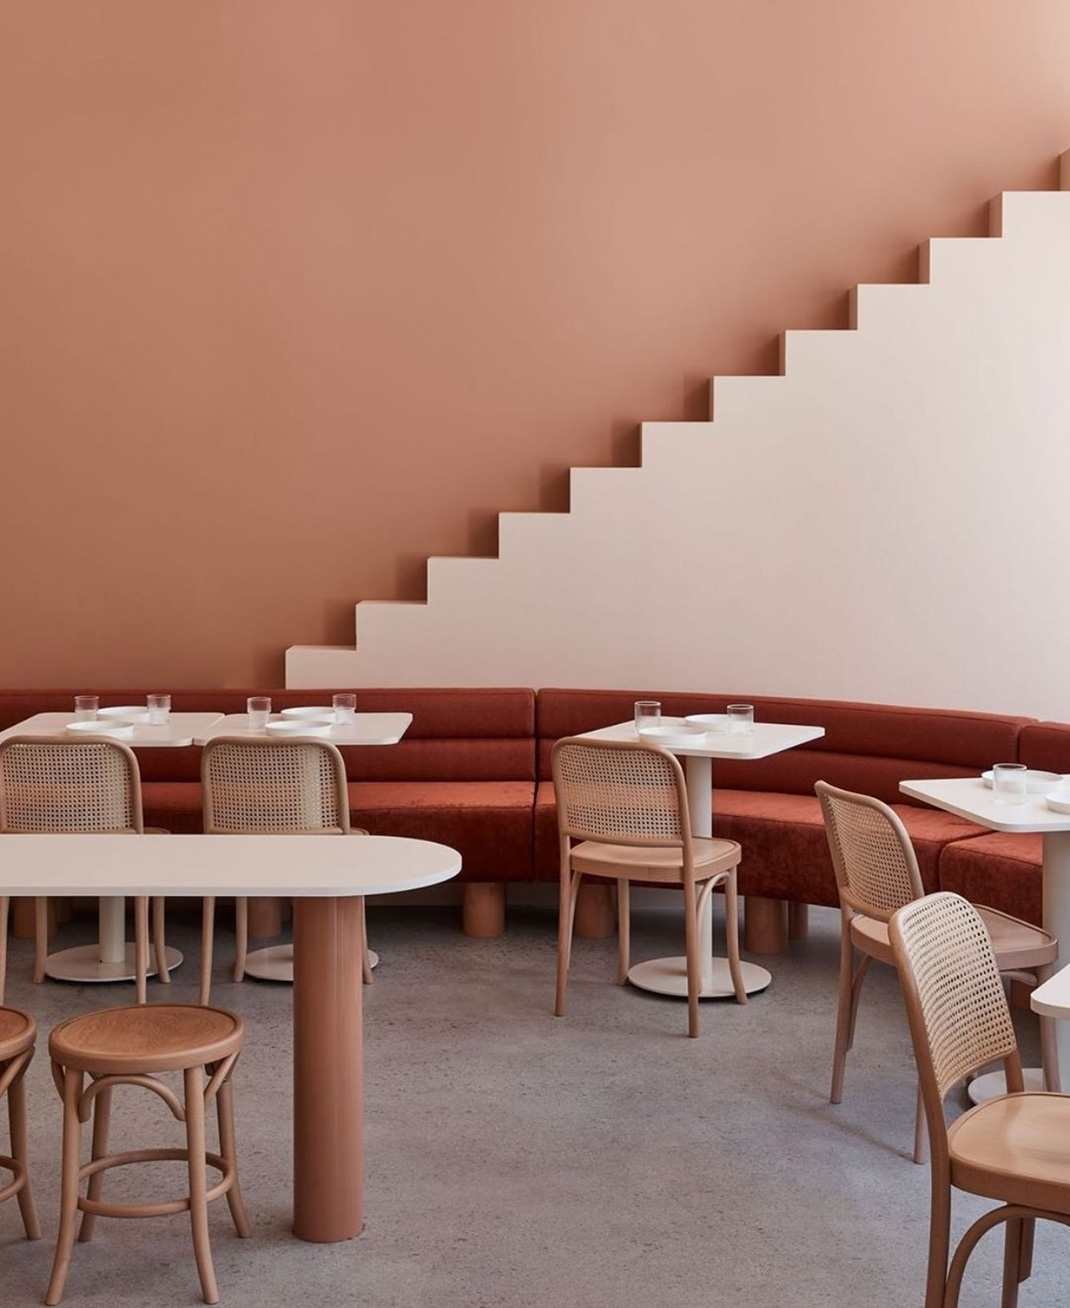 咖啡店The Budapest Cafe 澳大利亚 咖啡店 极简 logo设计 vi设计 空间设计